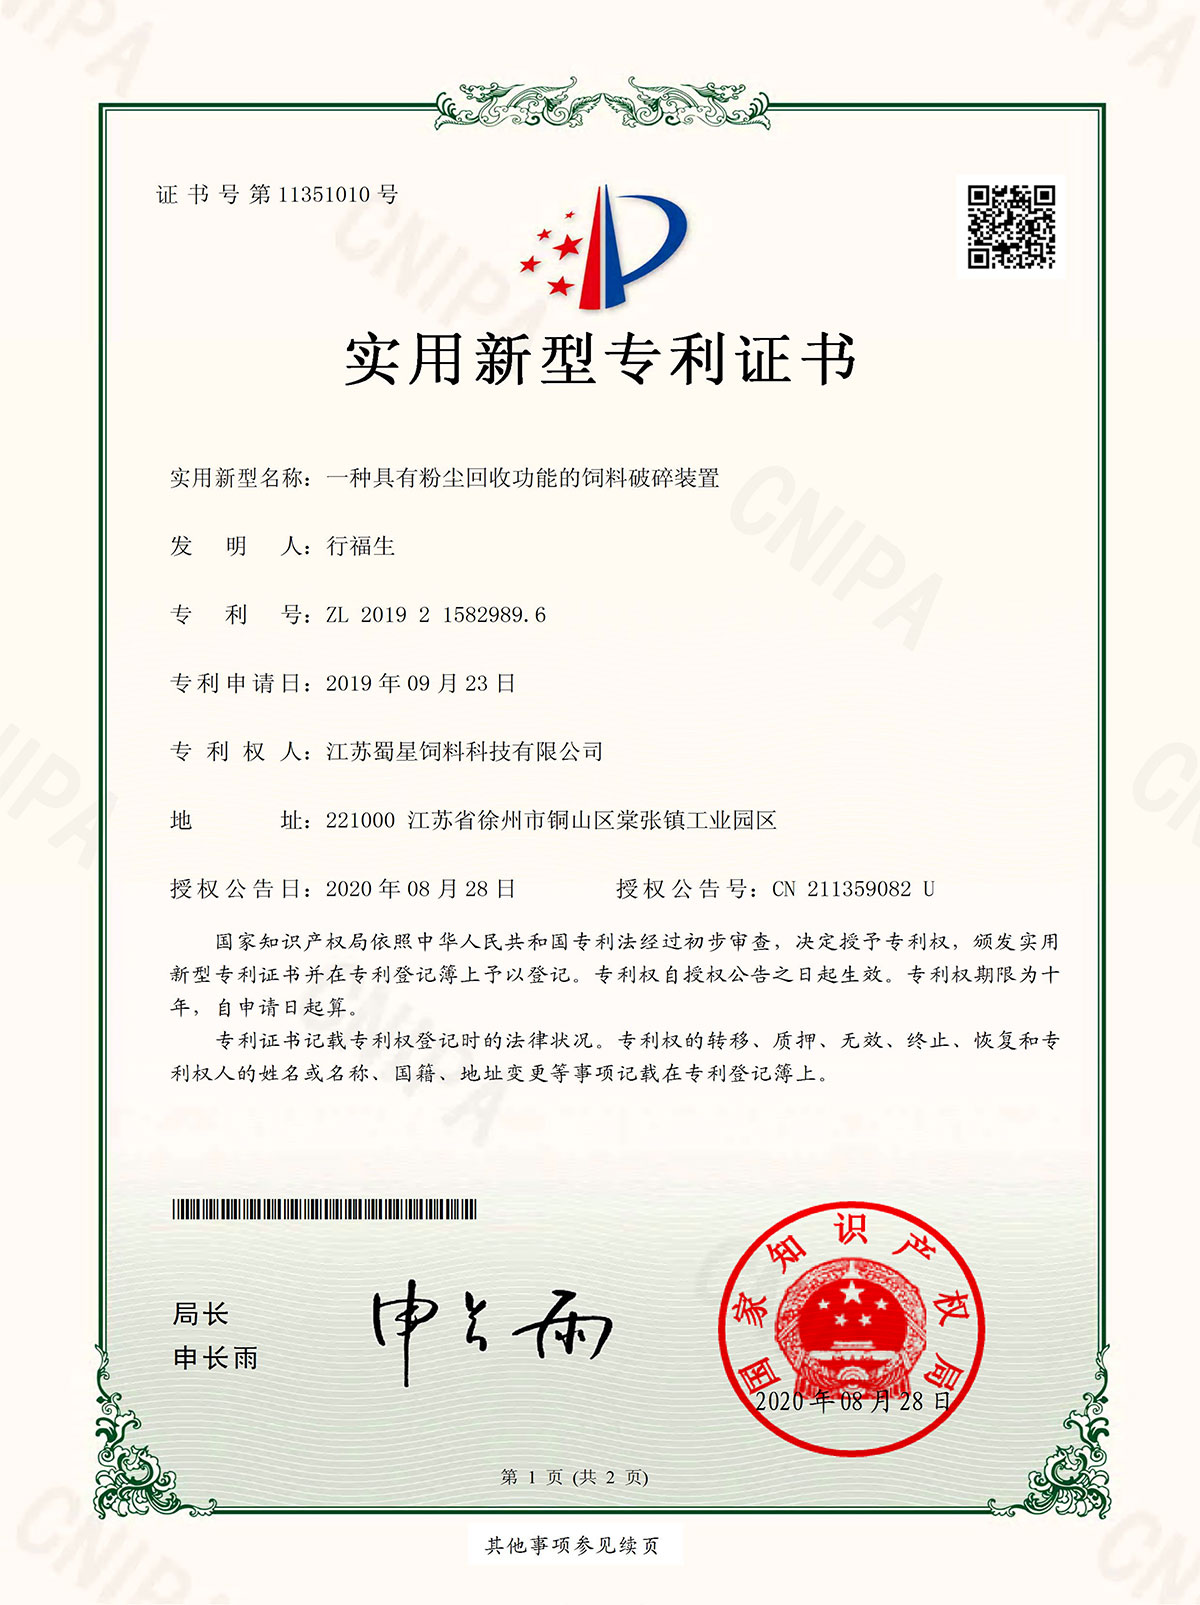 sertifikaten 3